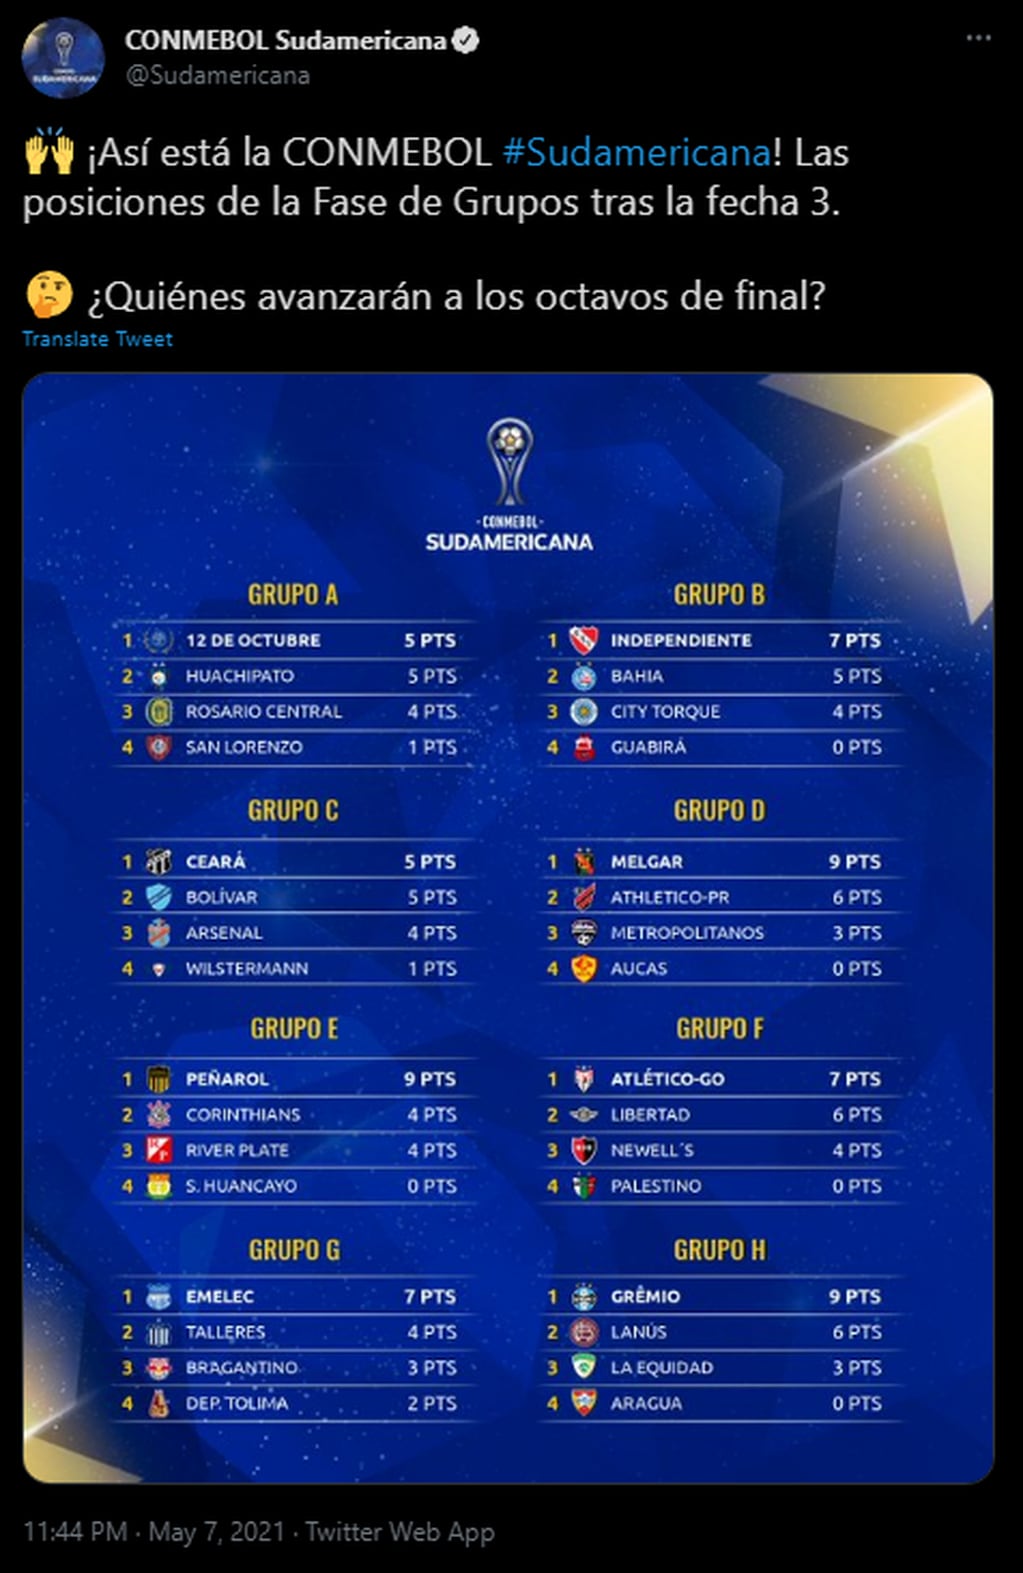 Los grupos de la Copa Sudamericana luego de la fecha 3.